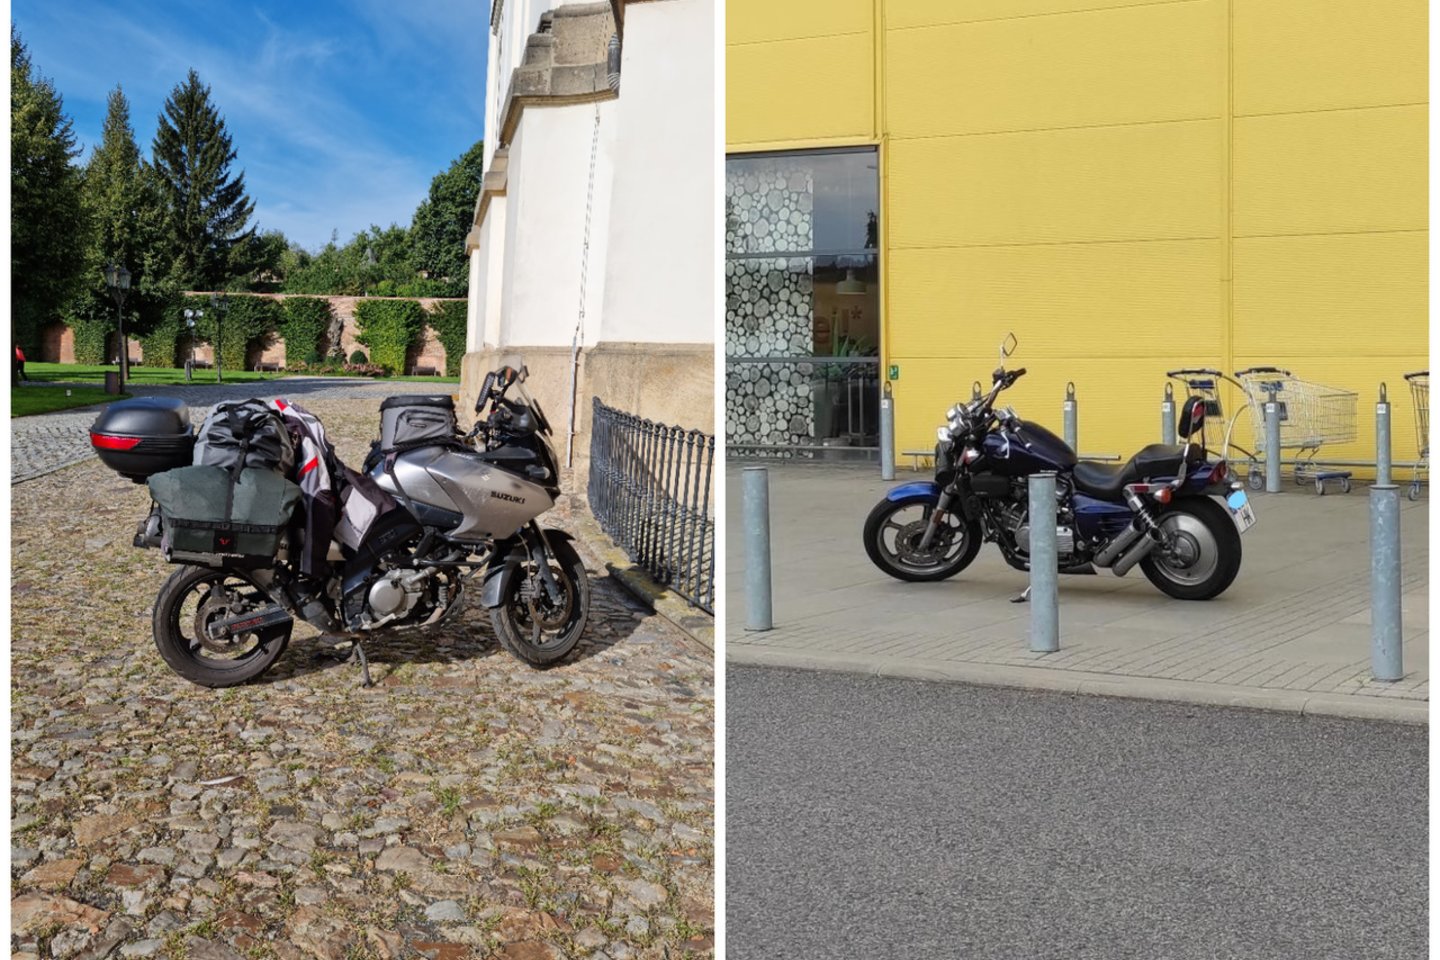  Motociklų parkavimas užsienyje ir Lietuvoje.<br> Skaitytojų nuotr.